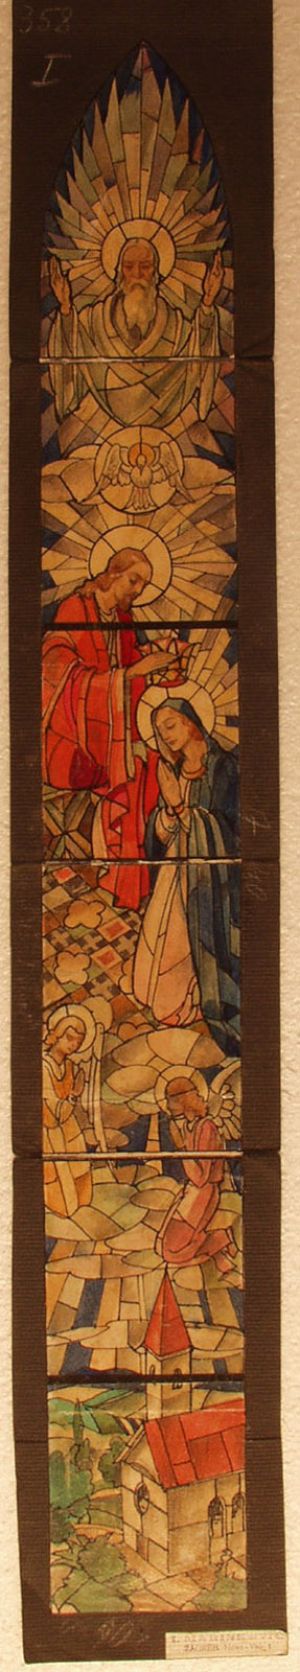 MUO-031486: Krunjenje Marije: skica za vitraj